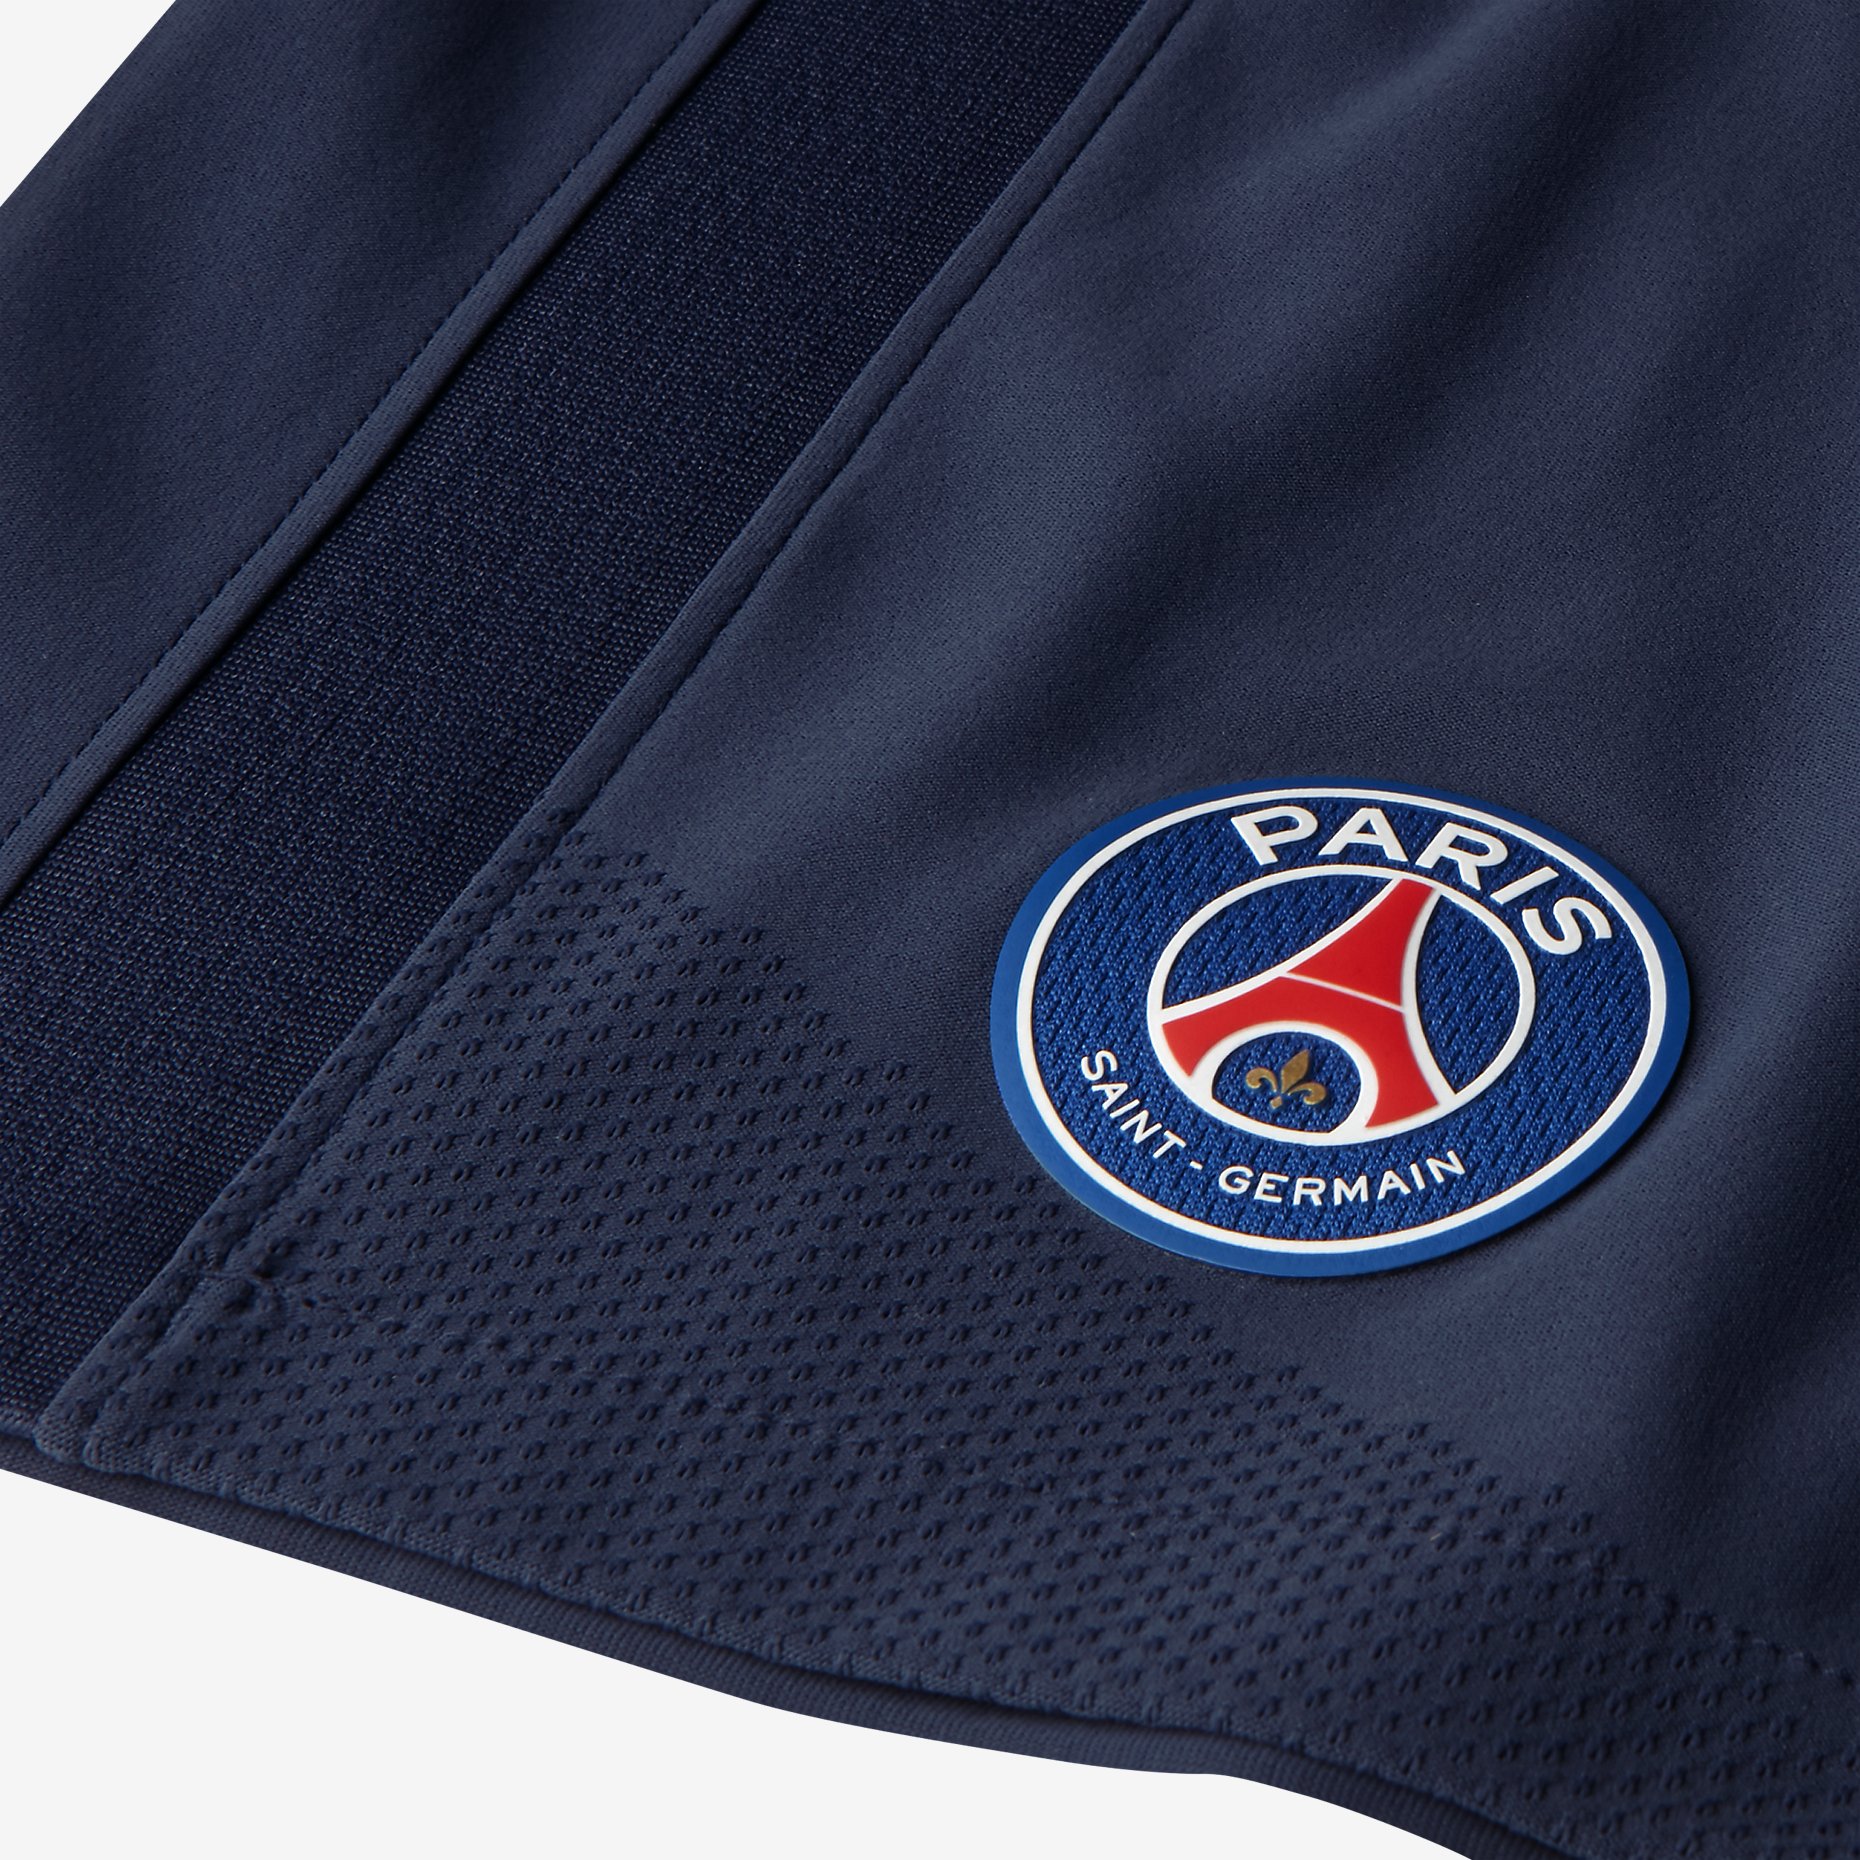 Paris Saint-Germain 2017-18 Nike Home Kit | 17/18 Kits | Football shirt ...